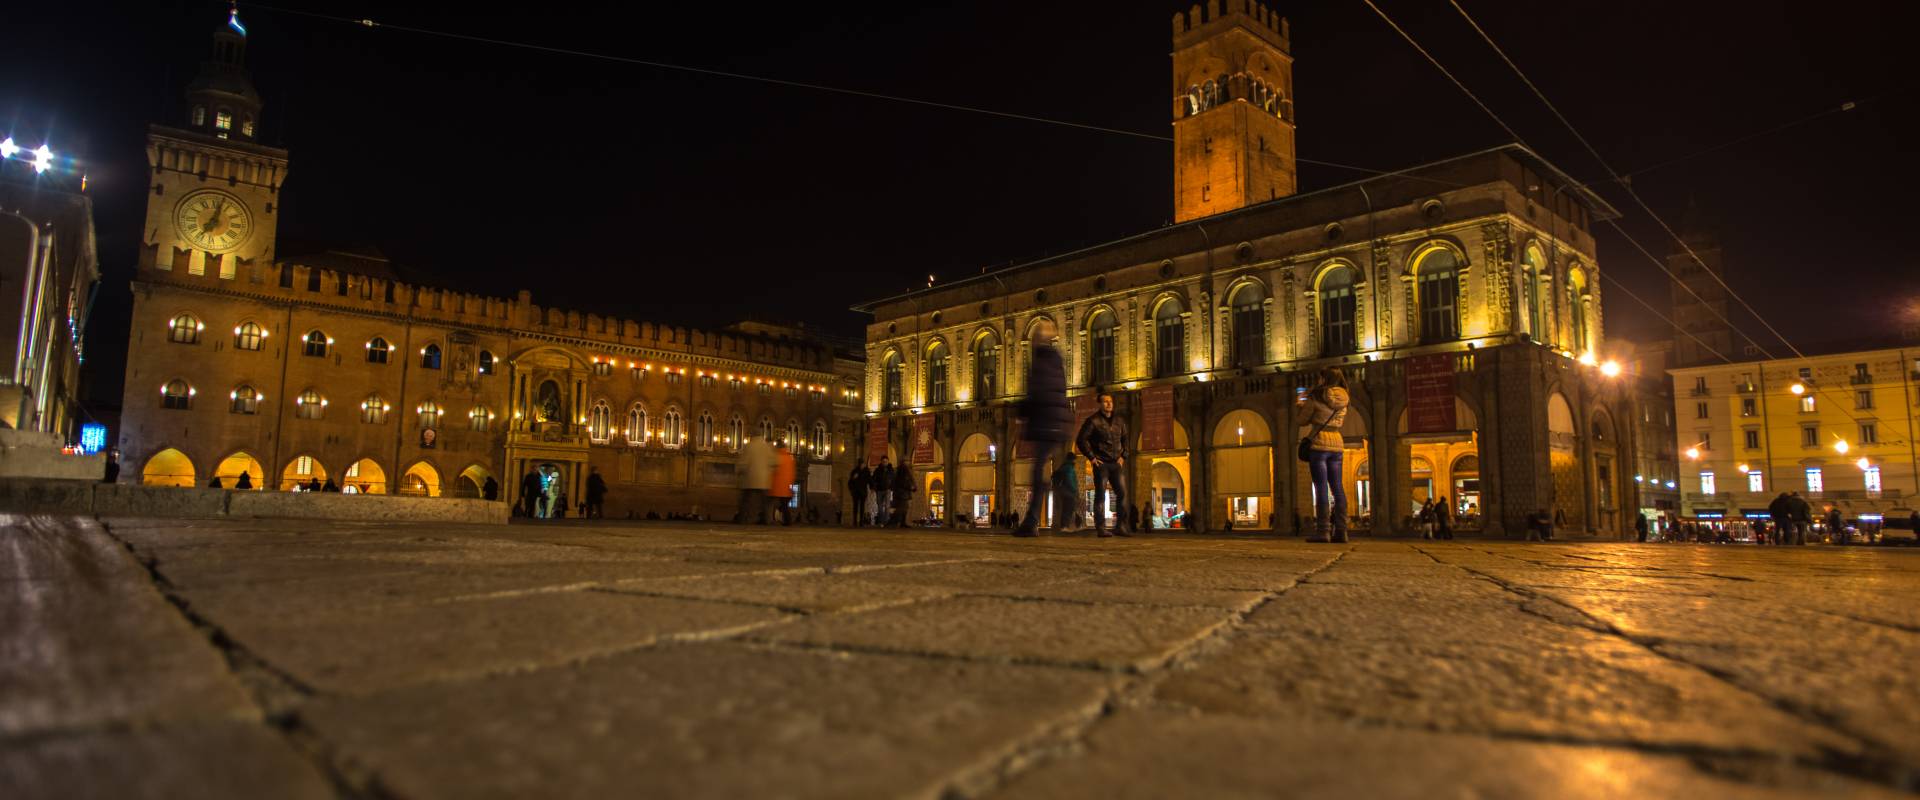 Piazza Maggiore Bologna di notte foto di Wwikiwalter